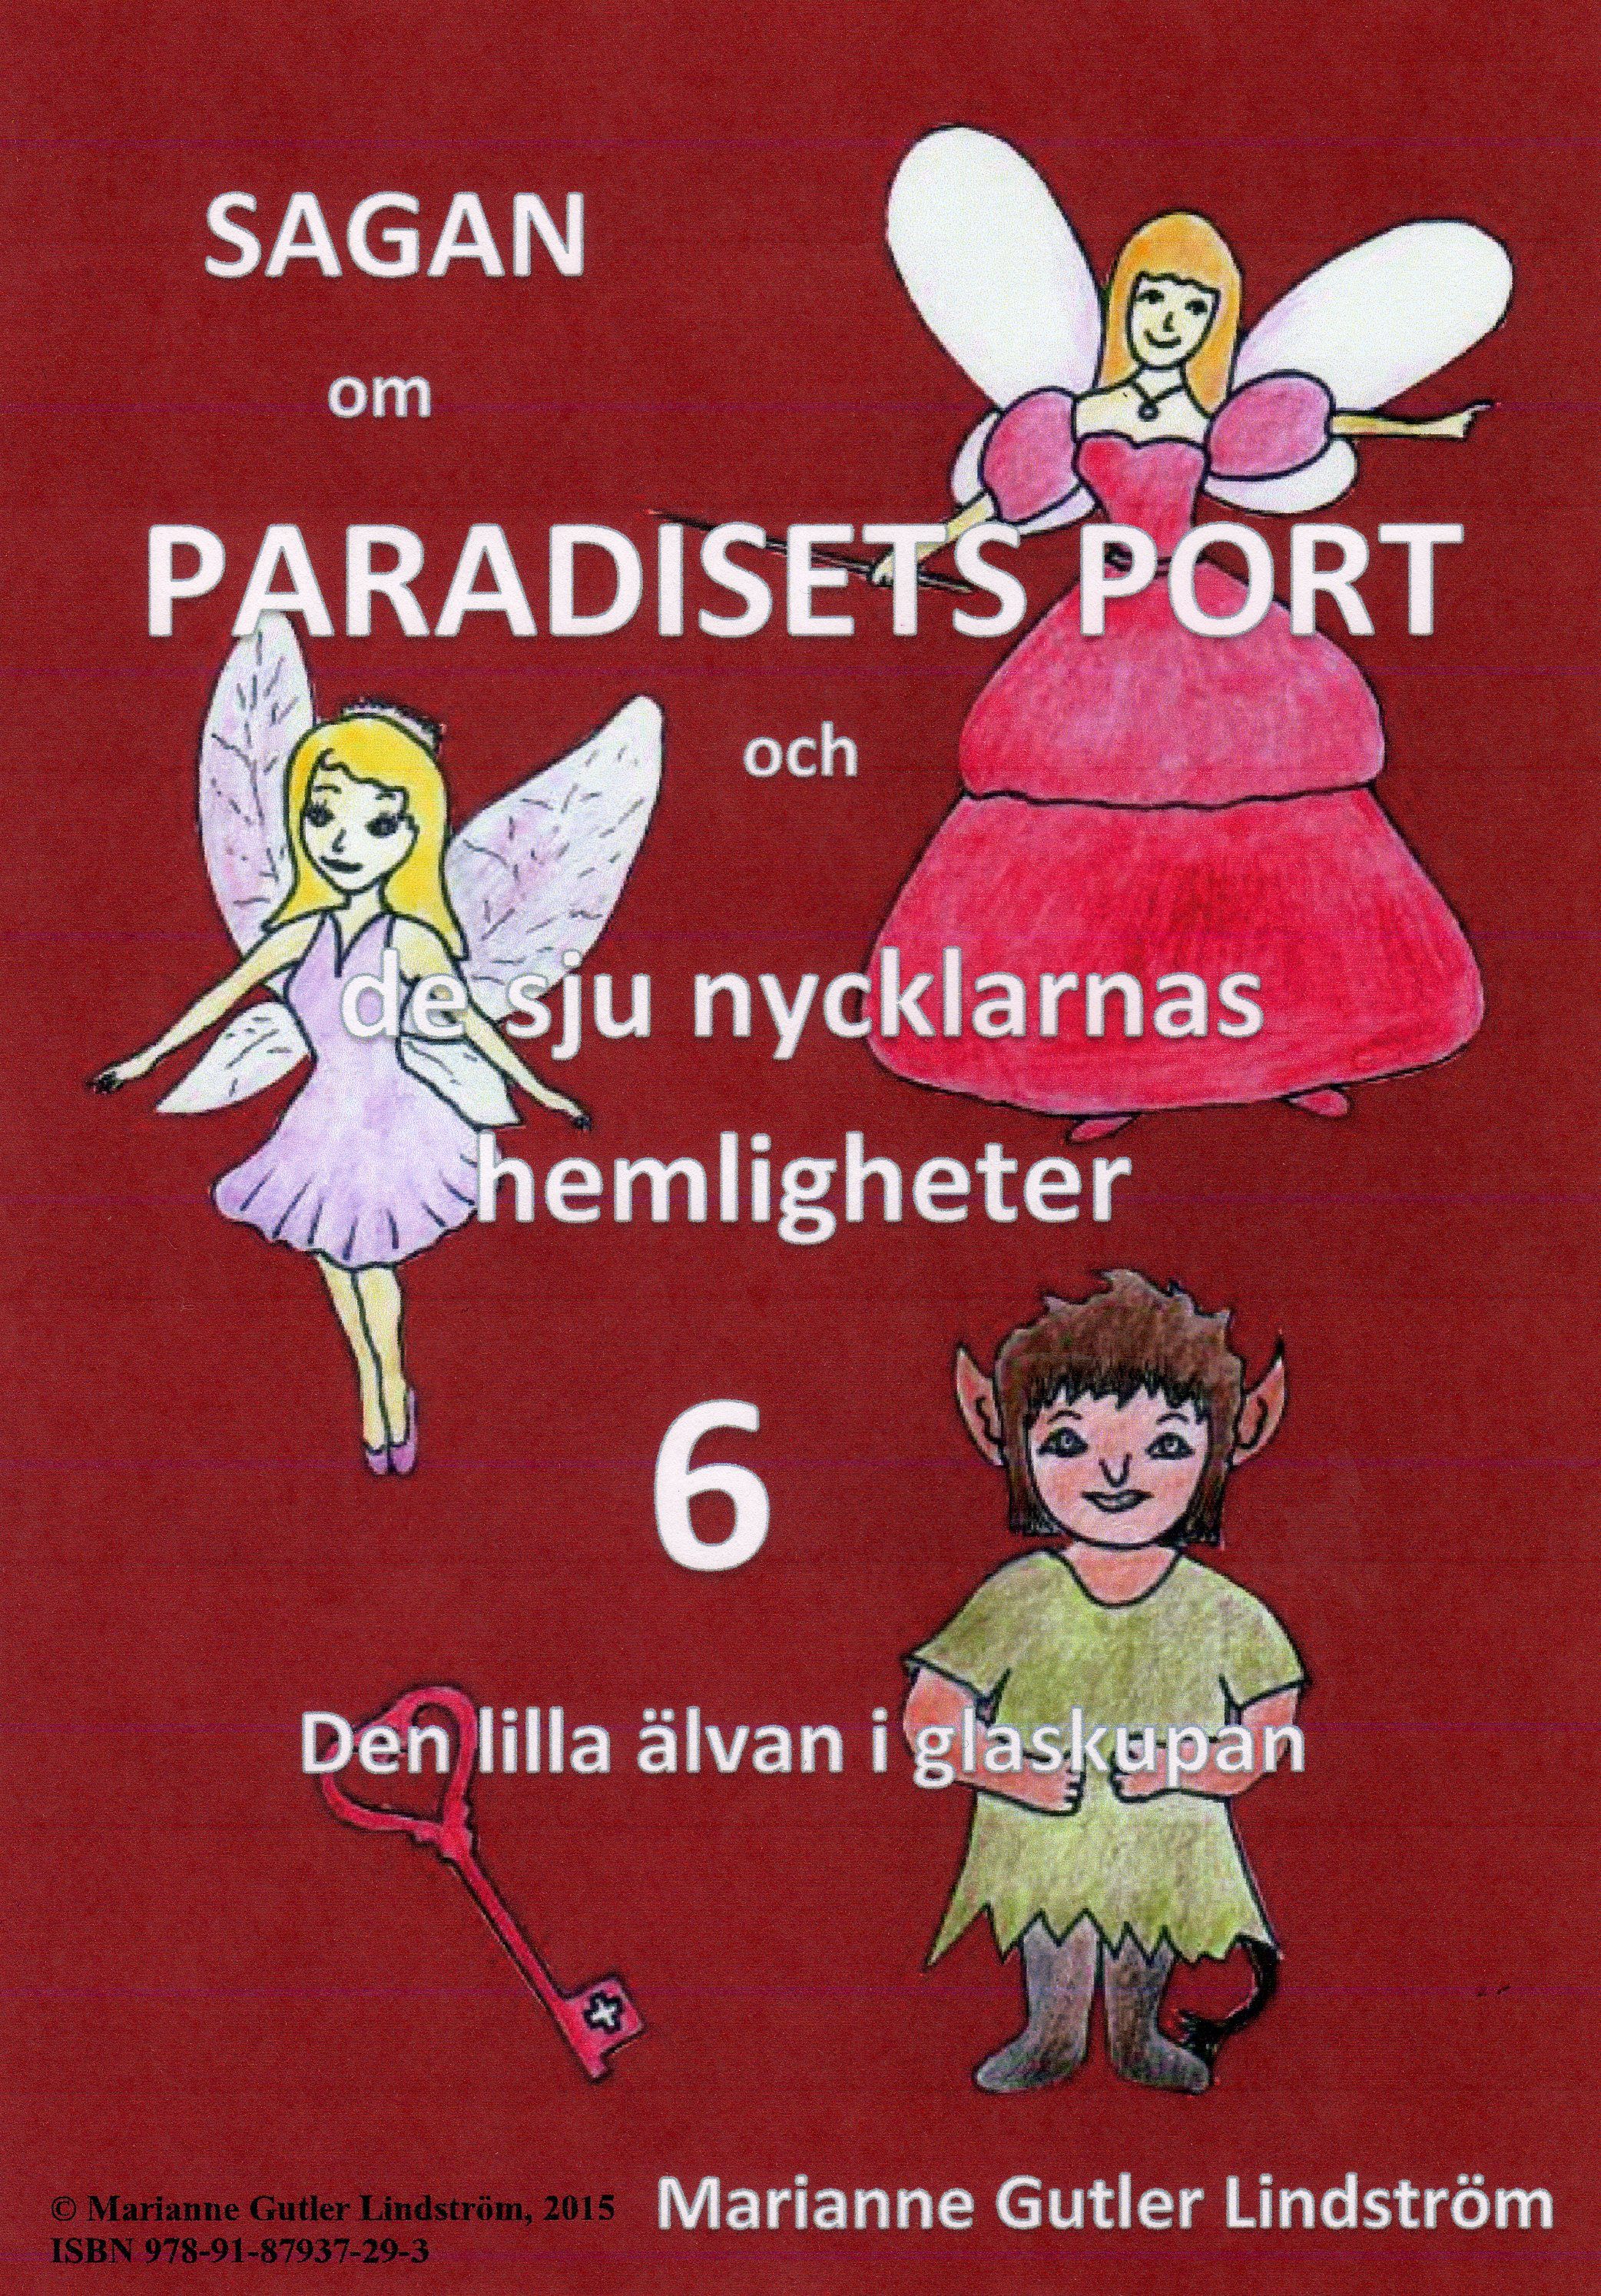 Sagan om Paradisets Port 6 Den lilla älvan i glaskupan, e-bog af Marianne Gutler Lindström